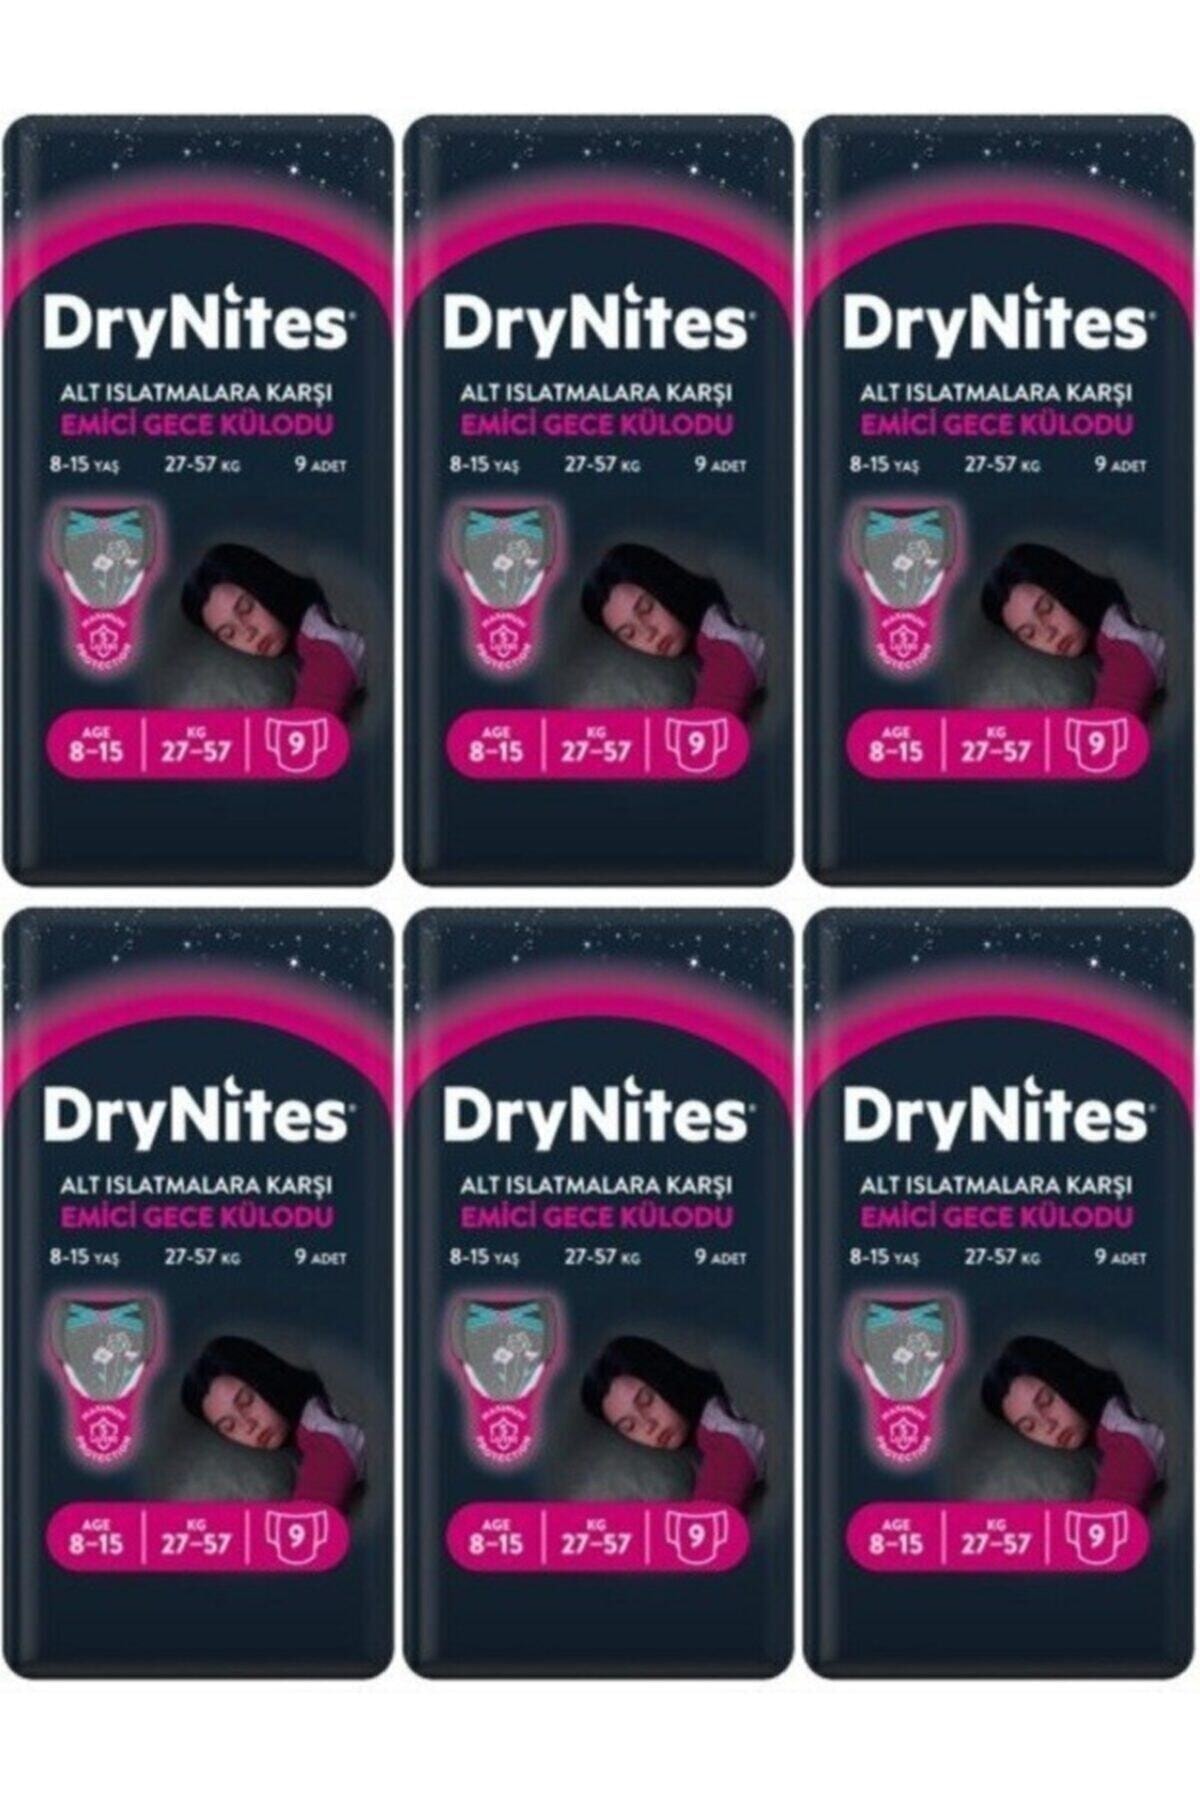 DryNites Kız Emici Gece Külodu 8-15 Yaş 54 Adet